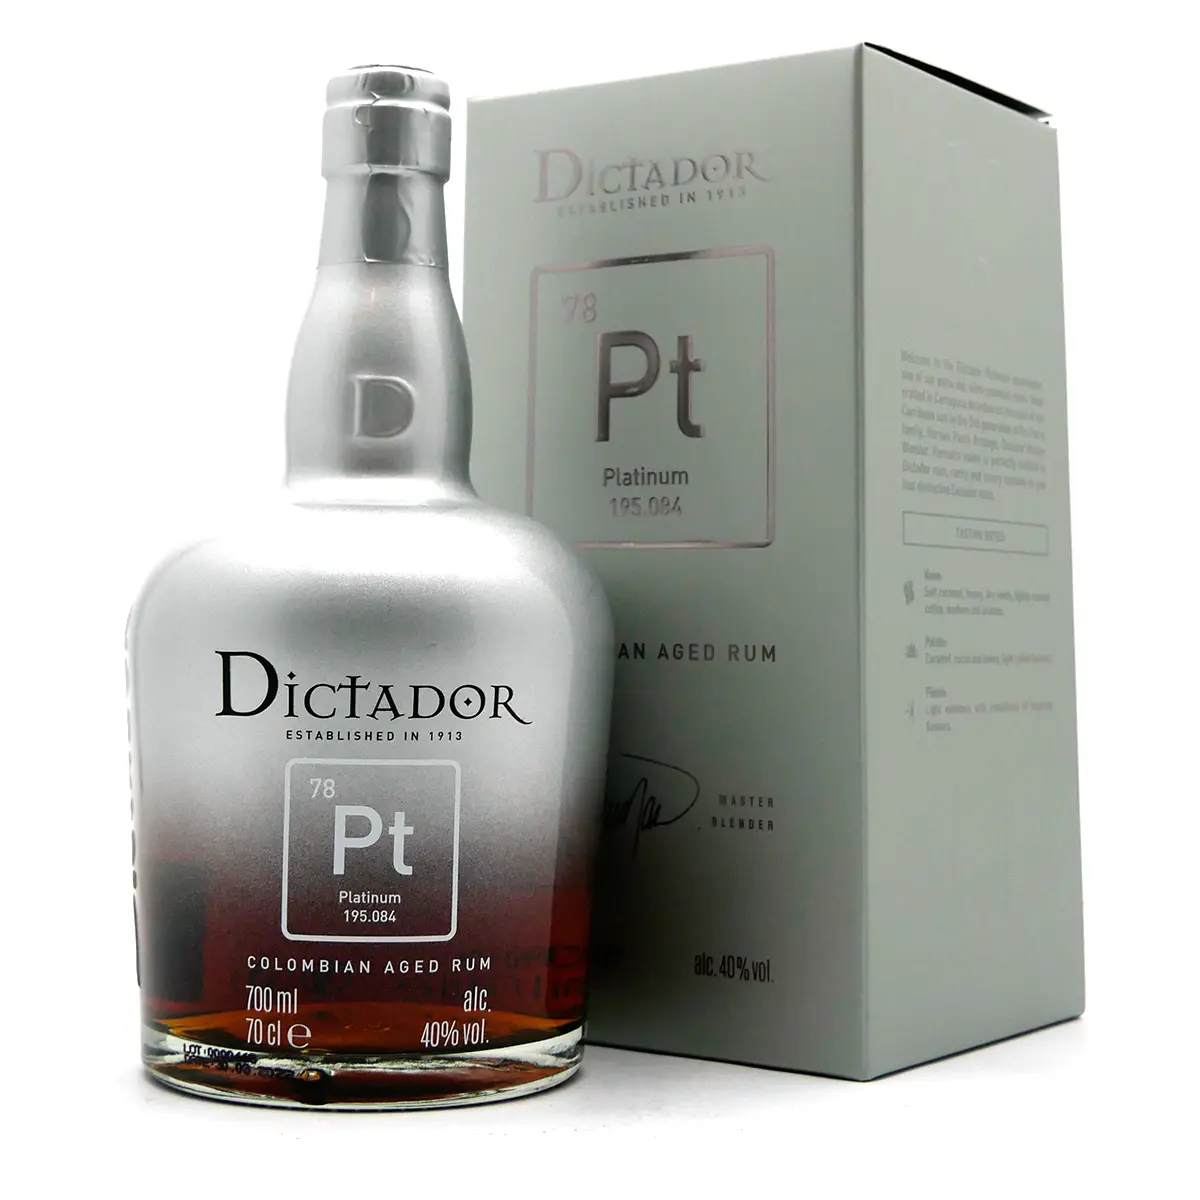 Dictador | Pt Platinum Colombian Aged Rum